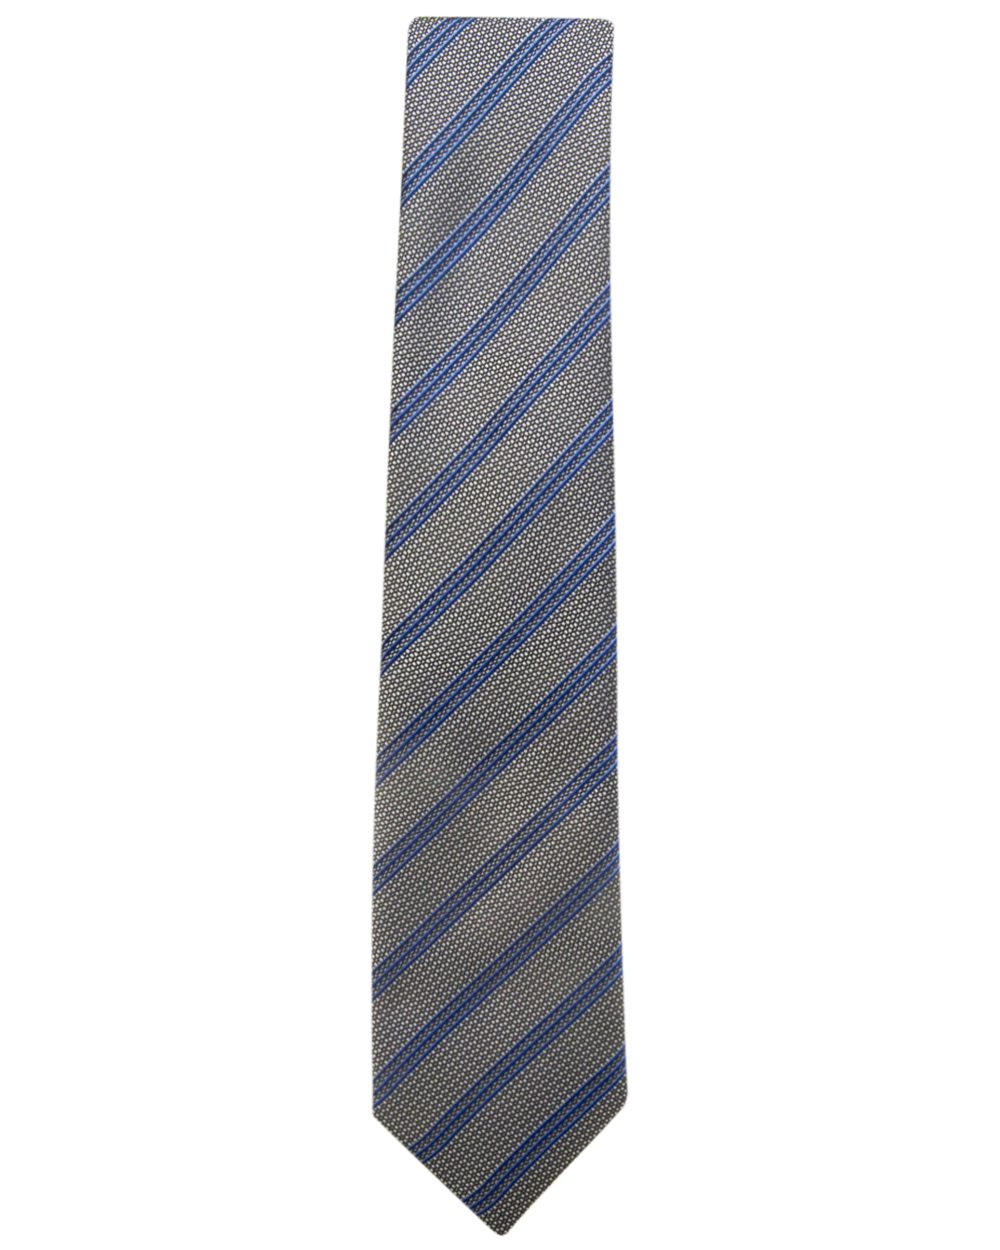 Flannel and Bluette Striped Tie